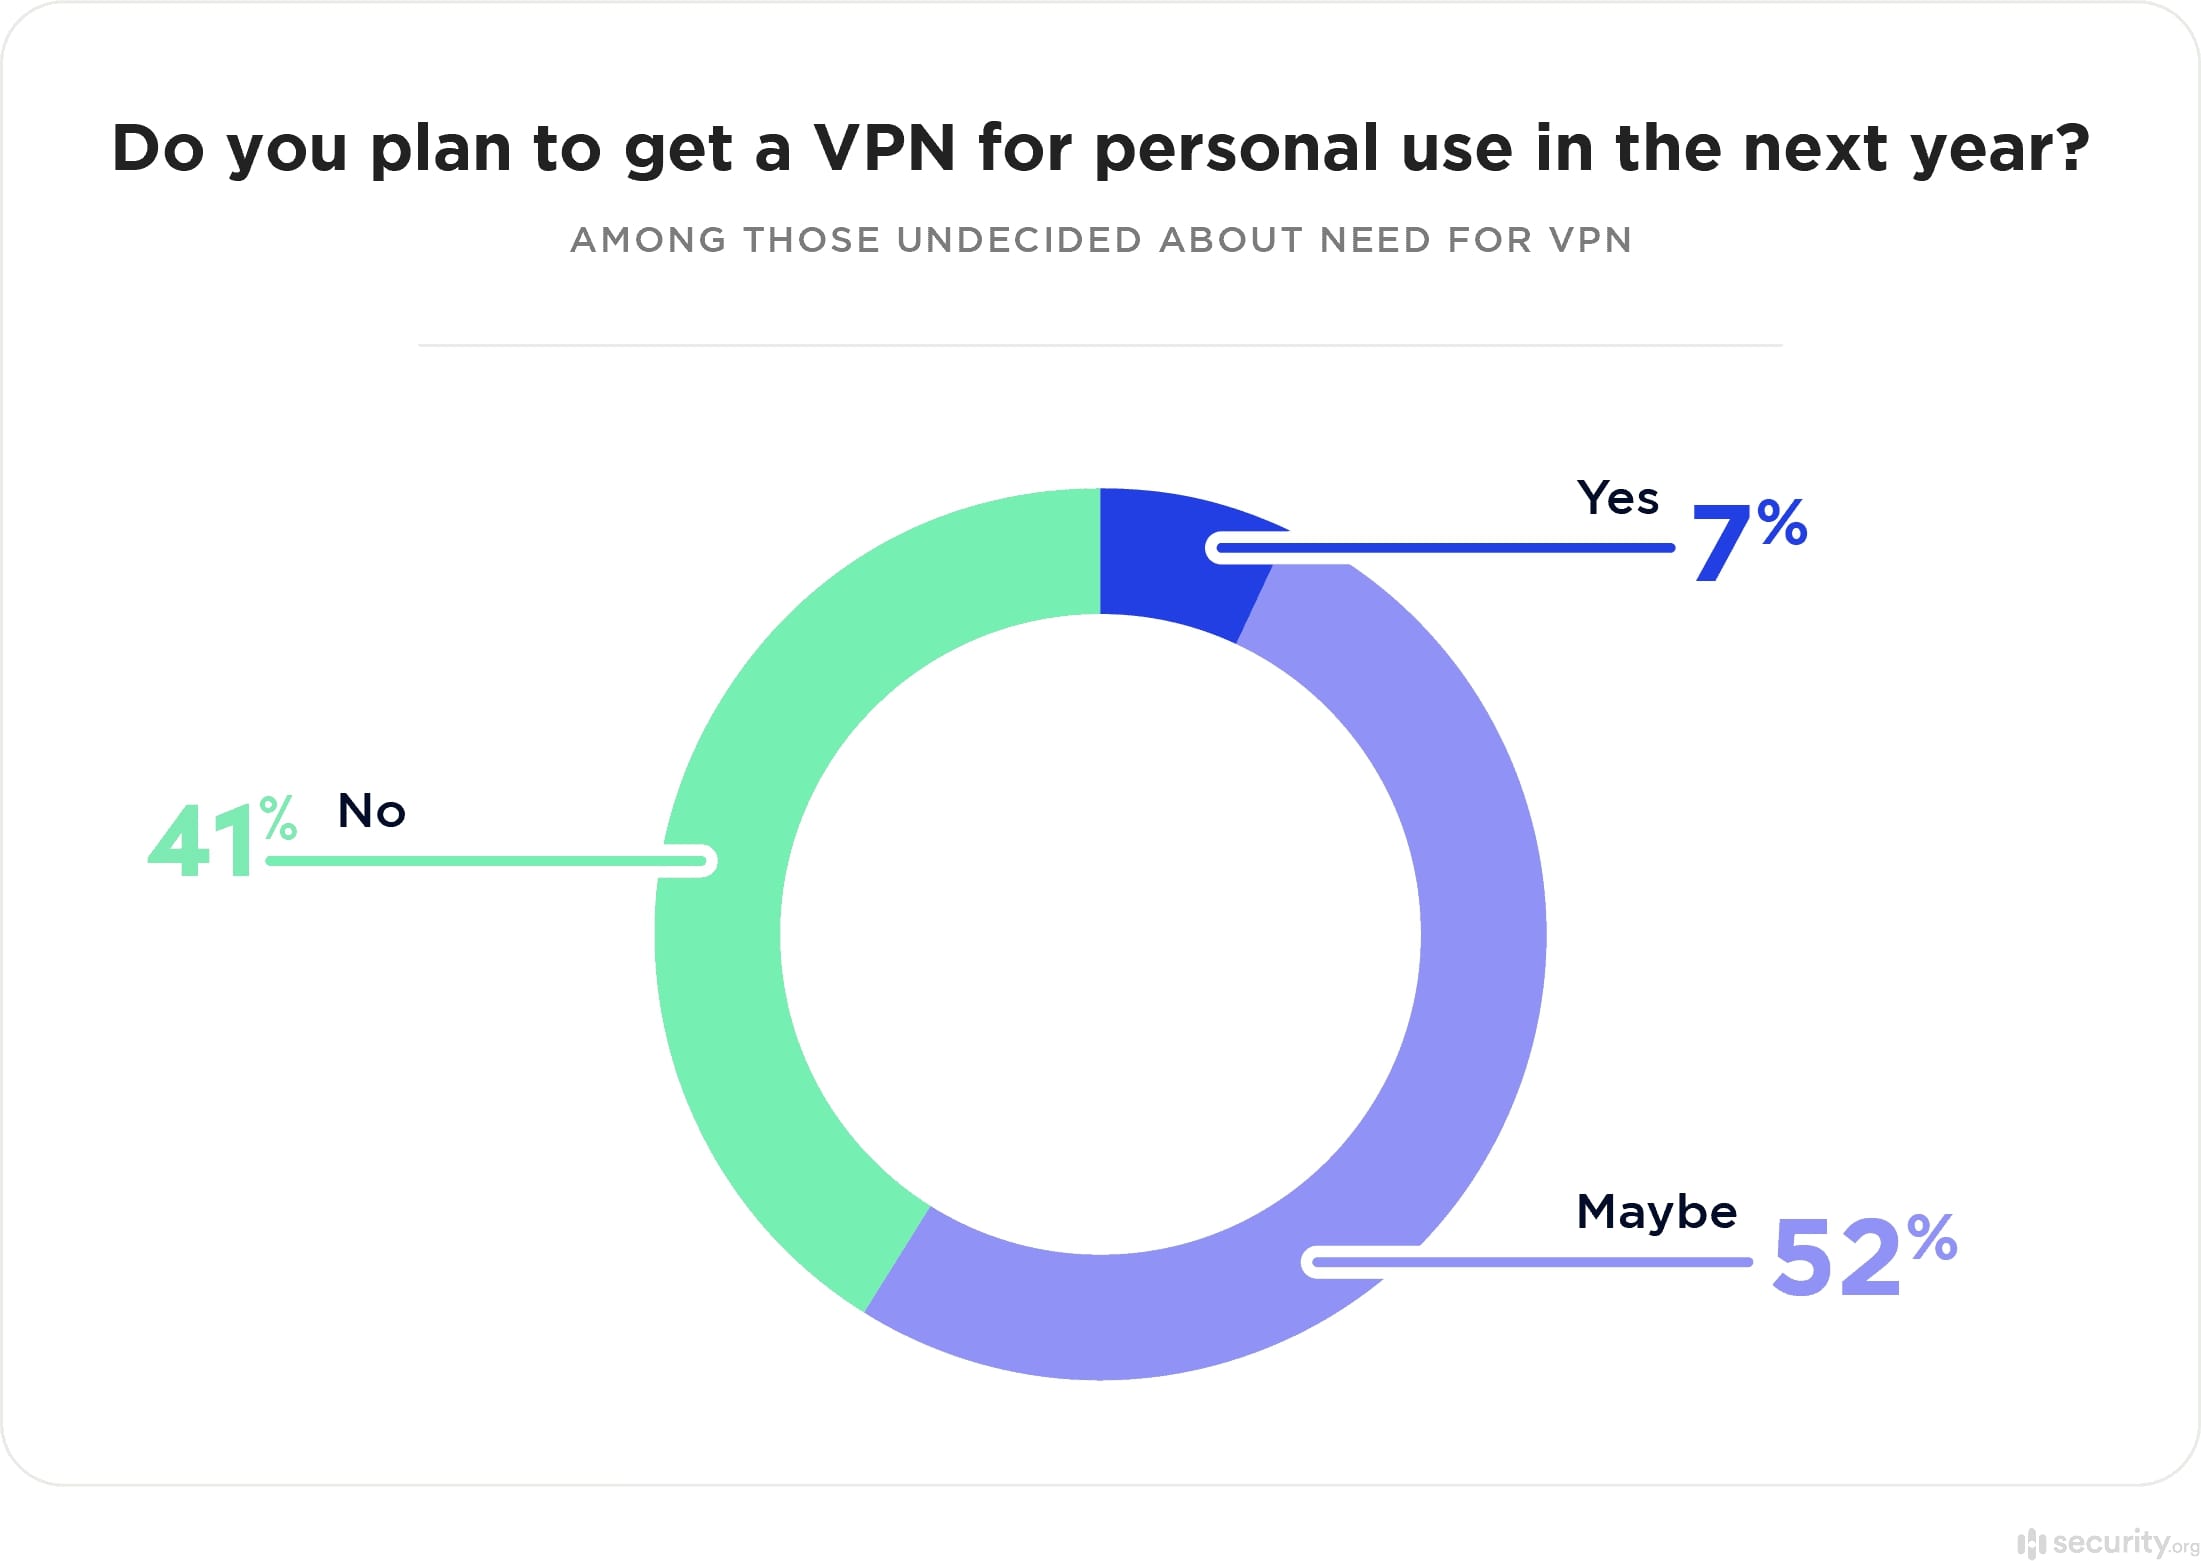 Pläne zum VPN-Einsatz für private Zwecke